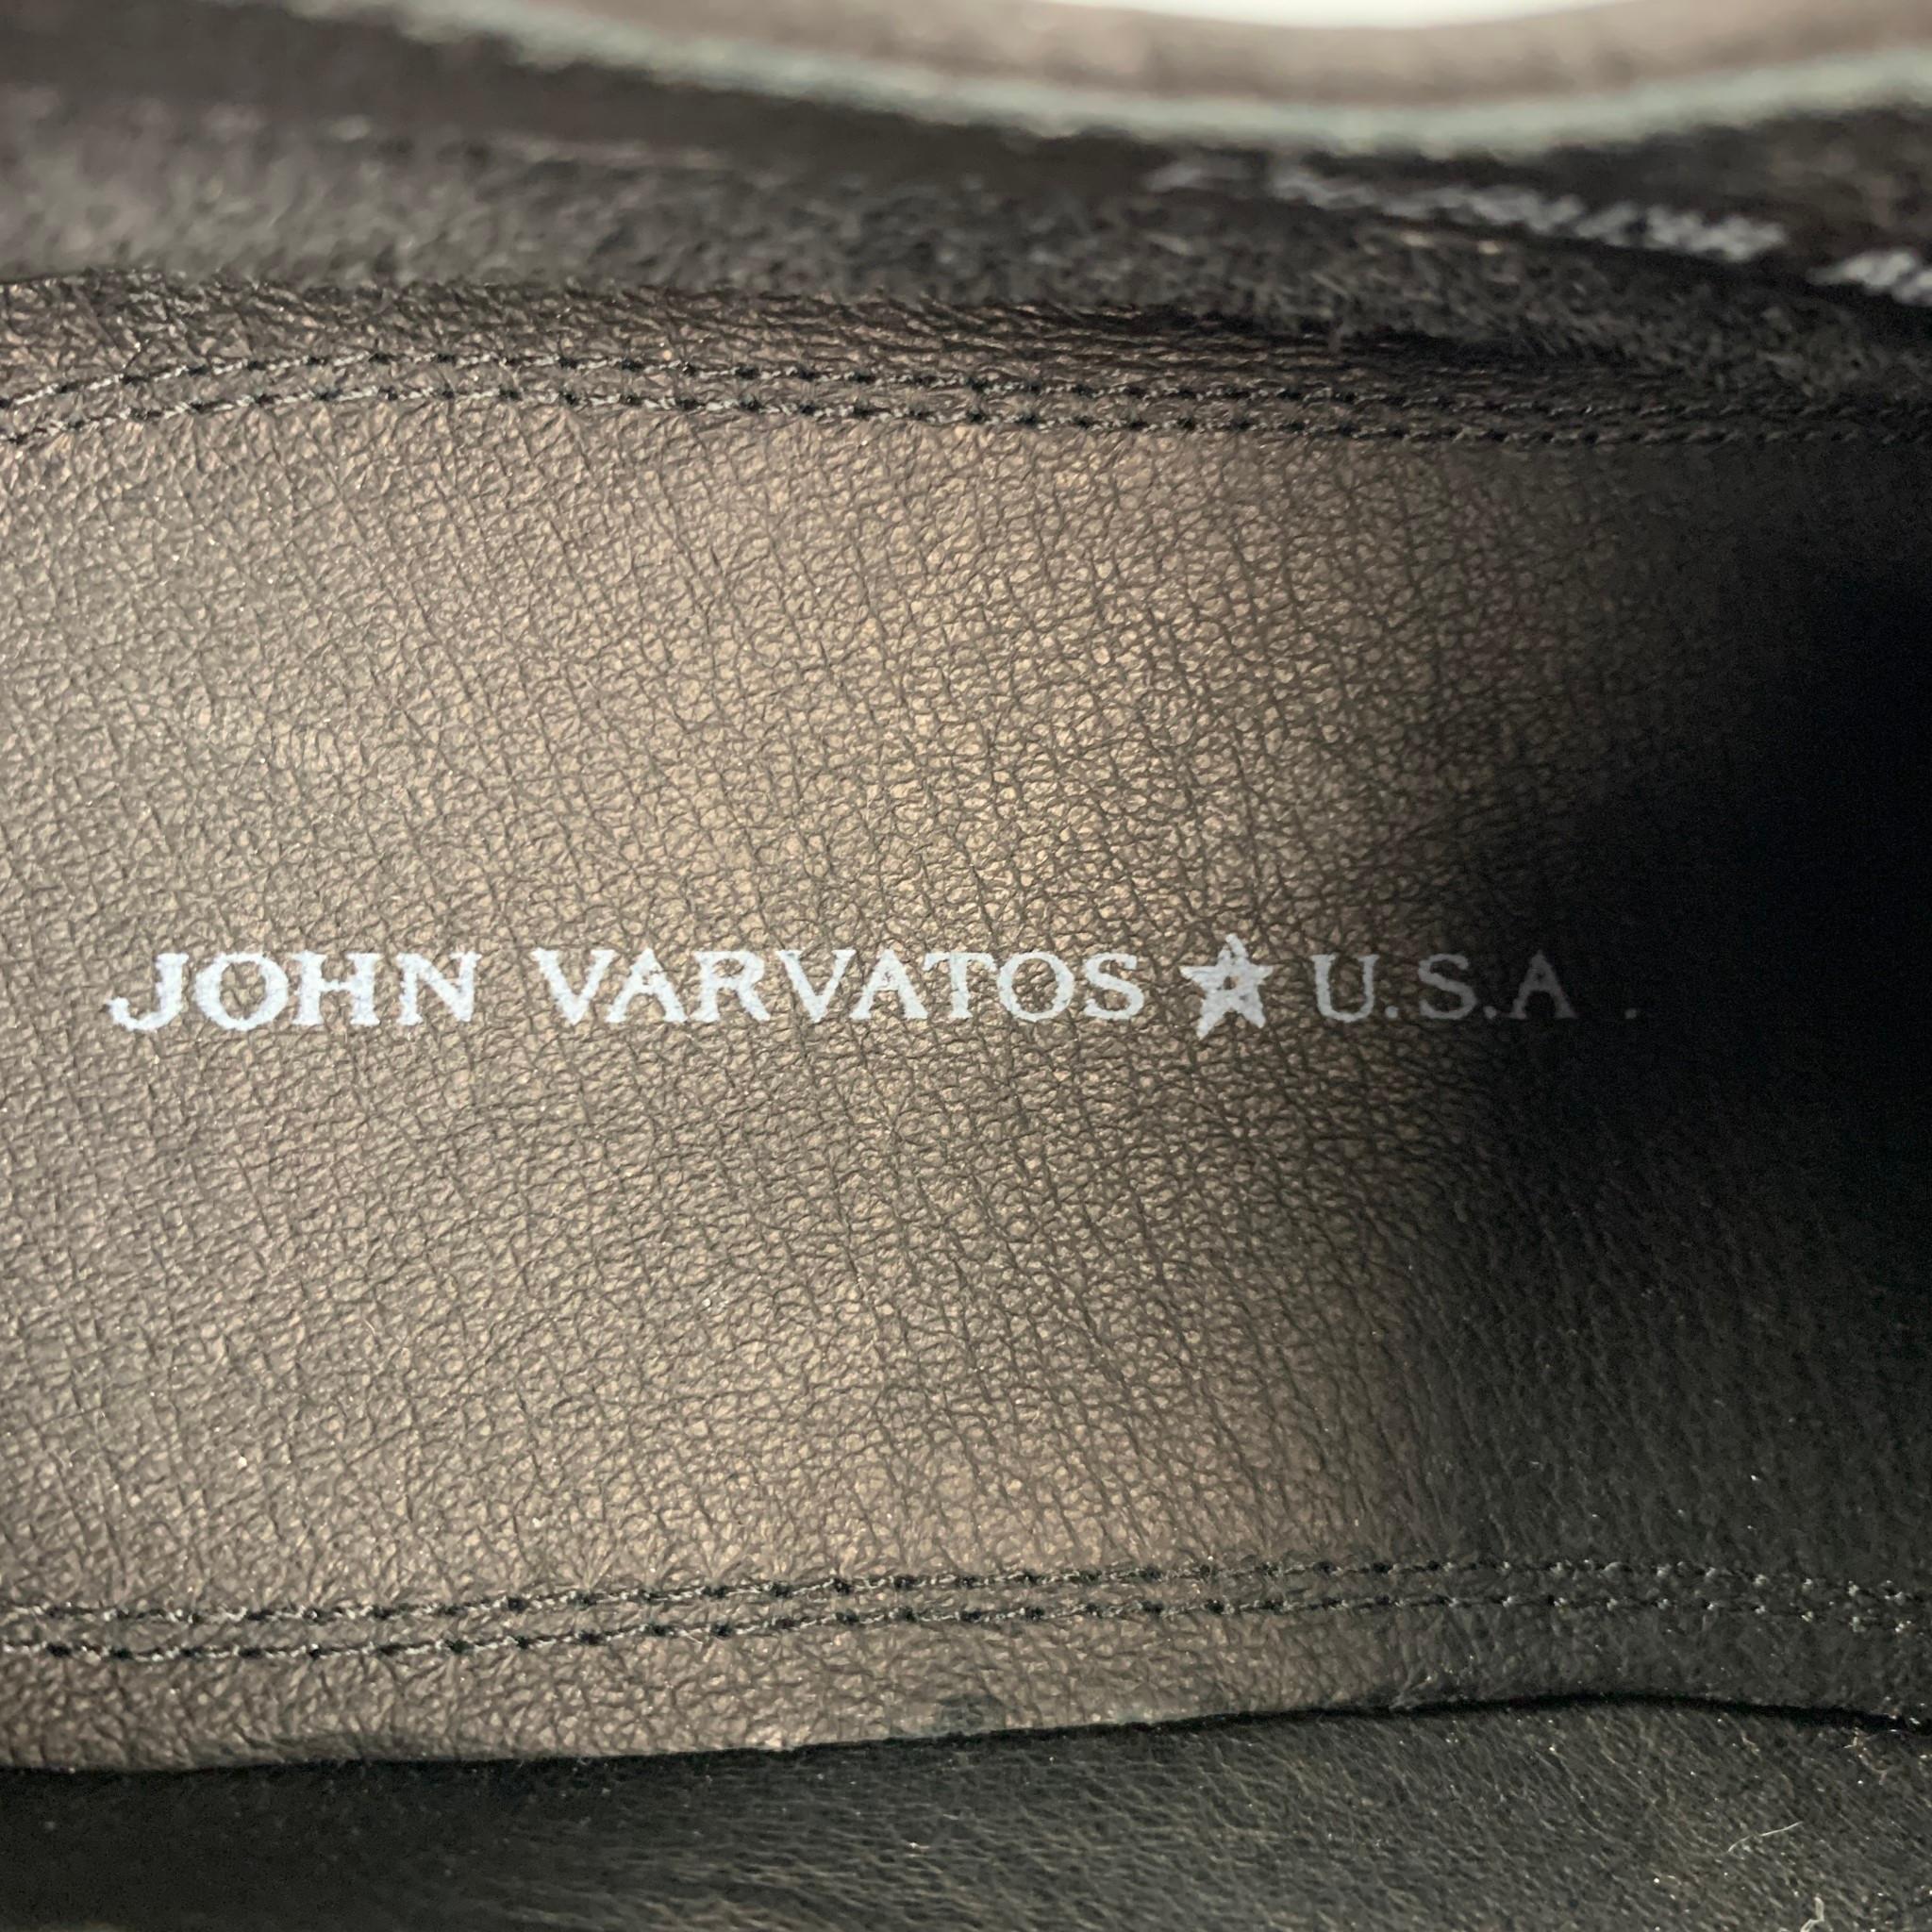 Men's JOHN VARVATOS * U.S.A. Size 11 Black Antique Leather Lace Up Shoes